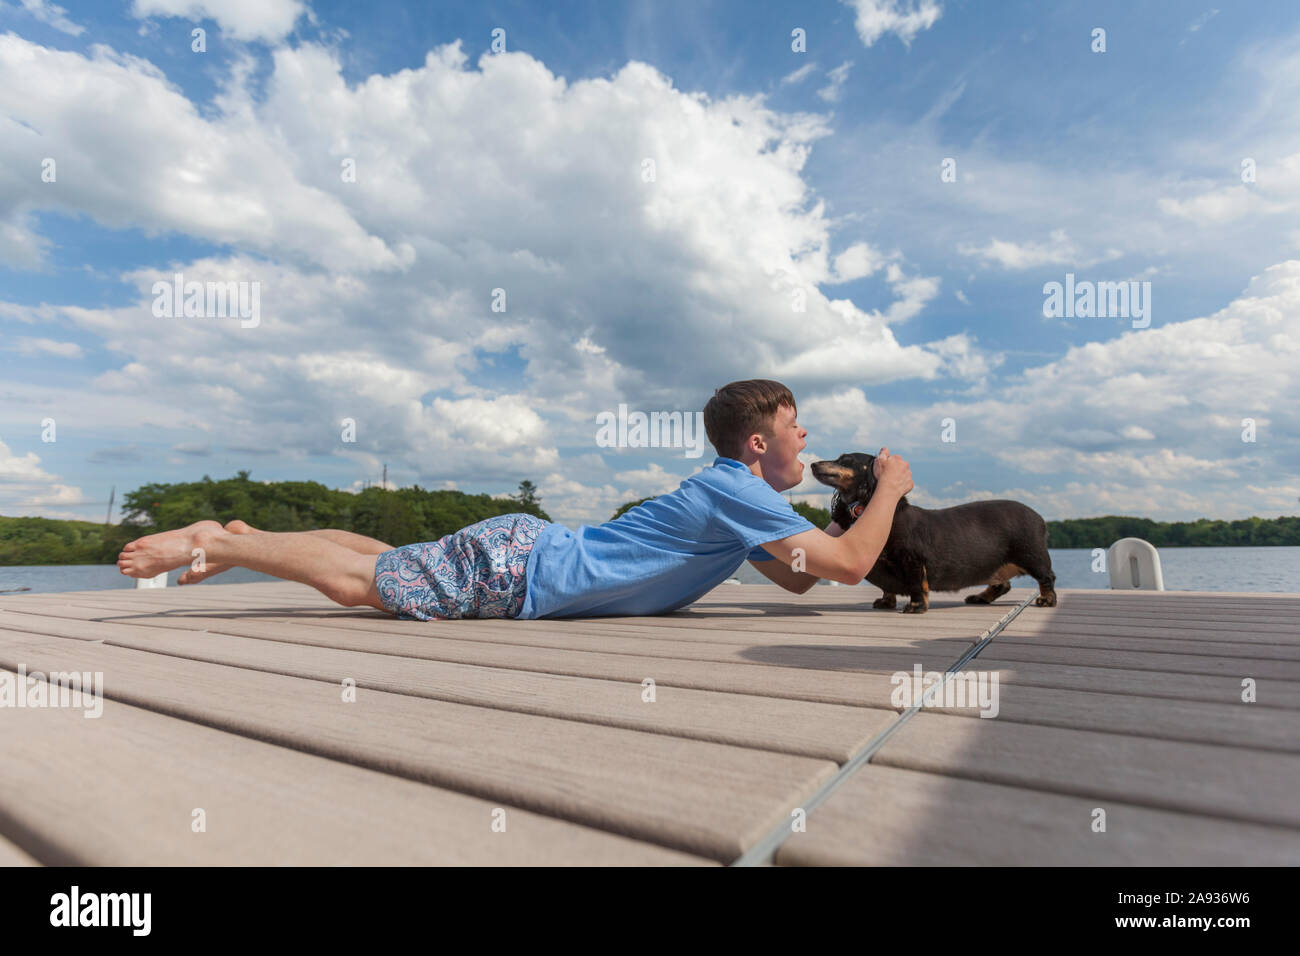 Jeune homme avec le syndrome de Down jouant avec un chien dessus une station d'accueil Banque D'Images